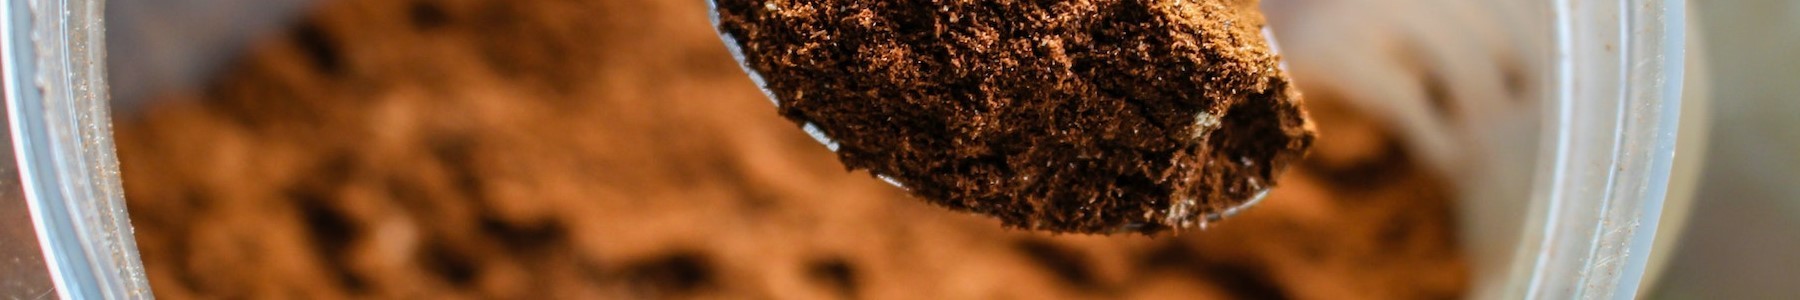 Comprar cacao puro | Tienda de Cacao | Ledma café y té ®